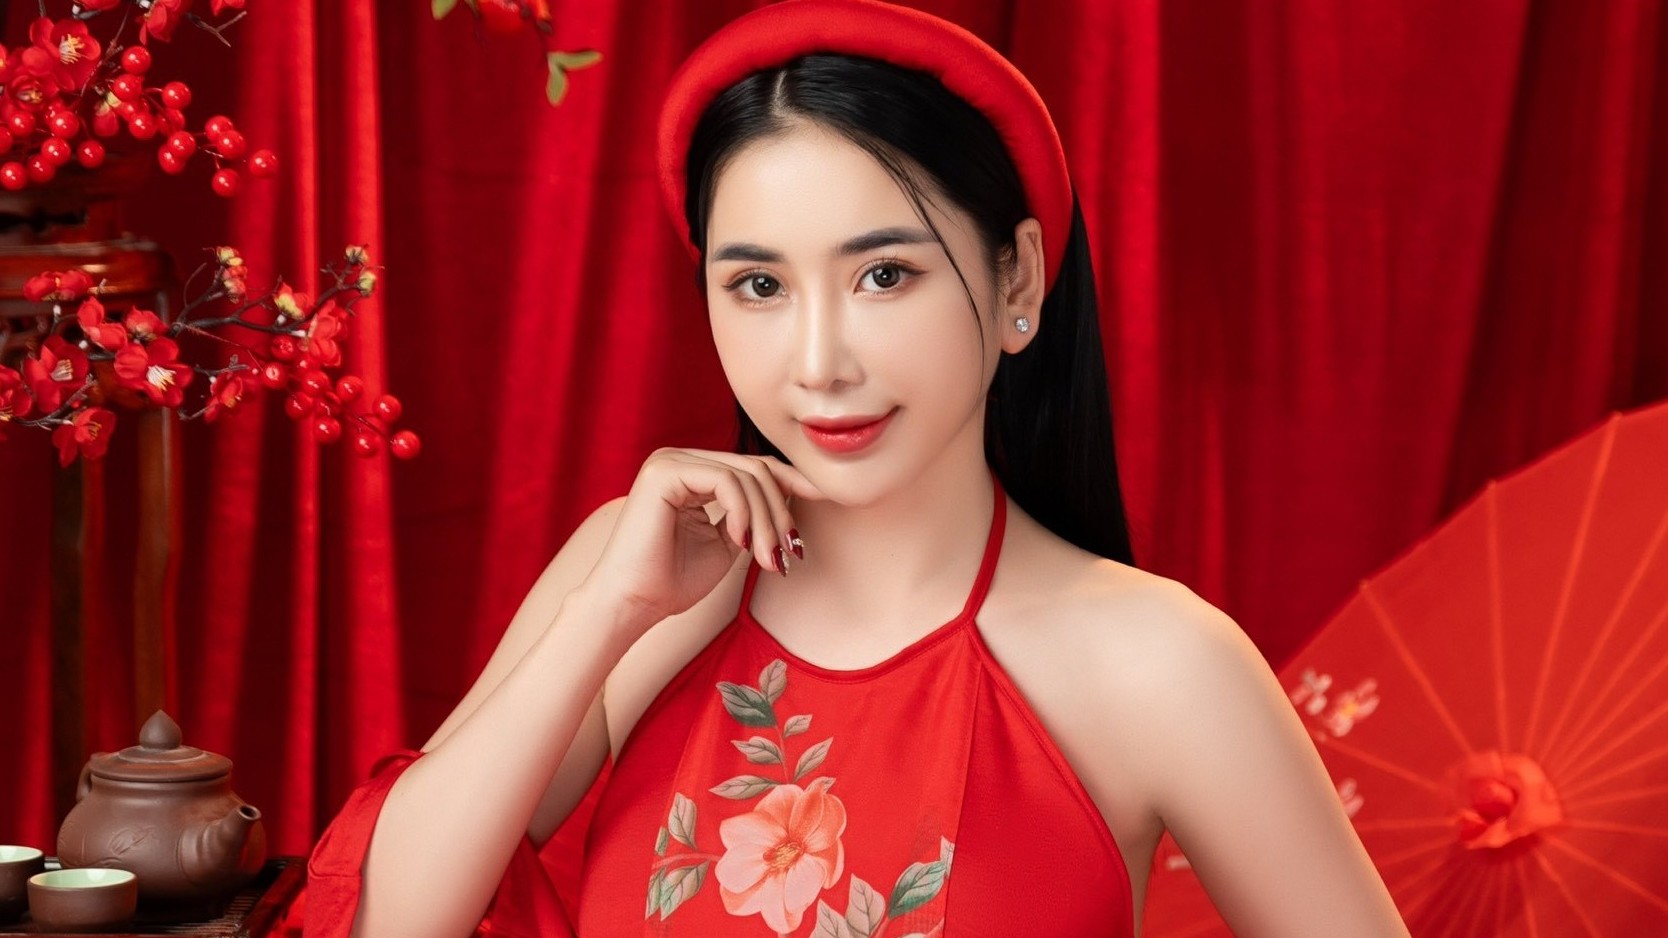 Hoa hậu Trịnh Thanh Hồng hóa nàng xuân trong bộ ảnh chào năm mới